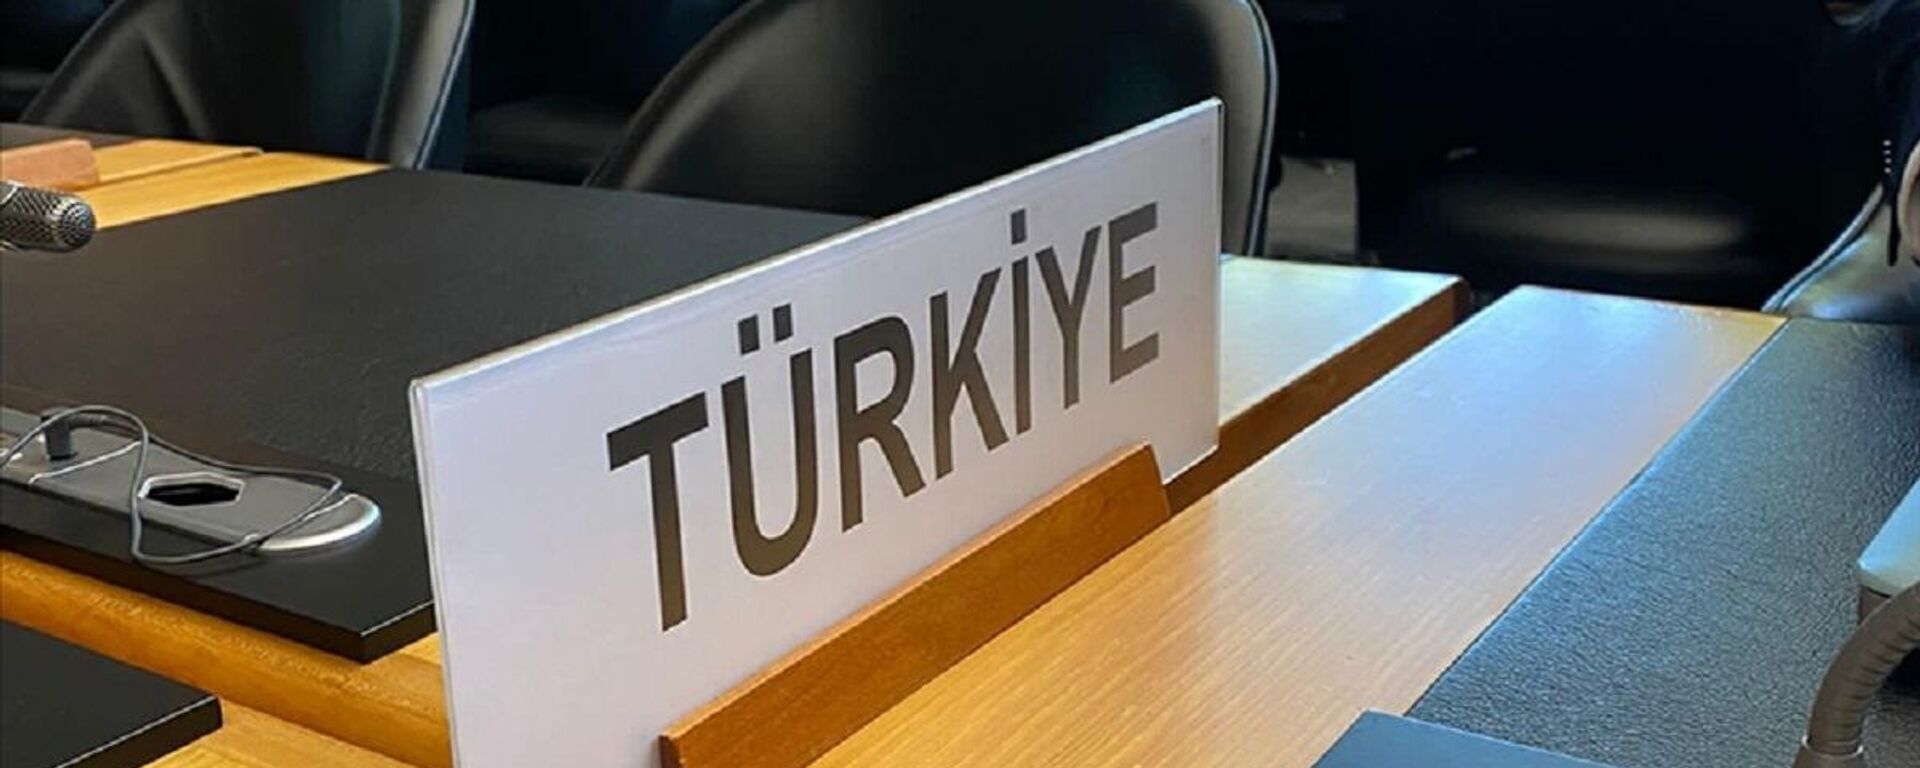 Birleşmiş Milletler'in (BM) yabancı dillerde 'Turkey' olarak kullanılan ülke adını 'Türkiye' olarak değiştirmesinin ardından İsviçre'nin Cenevre kentindeki Dünya Ticaret Örgütü'nde (DTÖ) ülke ismi ilk kez 'Türkiye' şeklinde kullanıldı. - Sputnik Türkiye, 1920, 04.06.2022